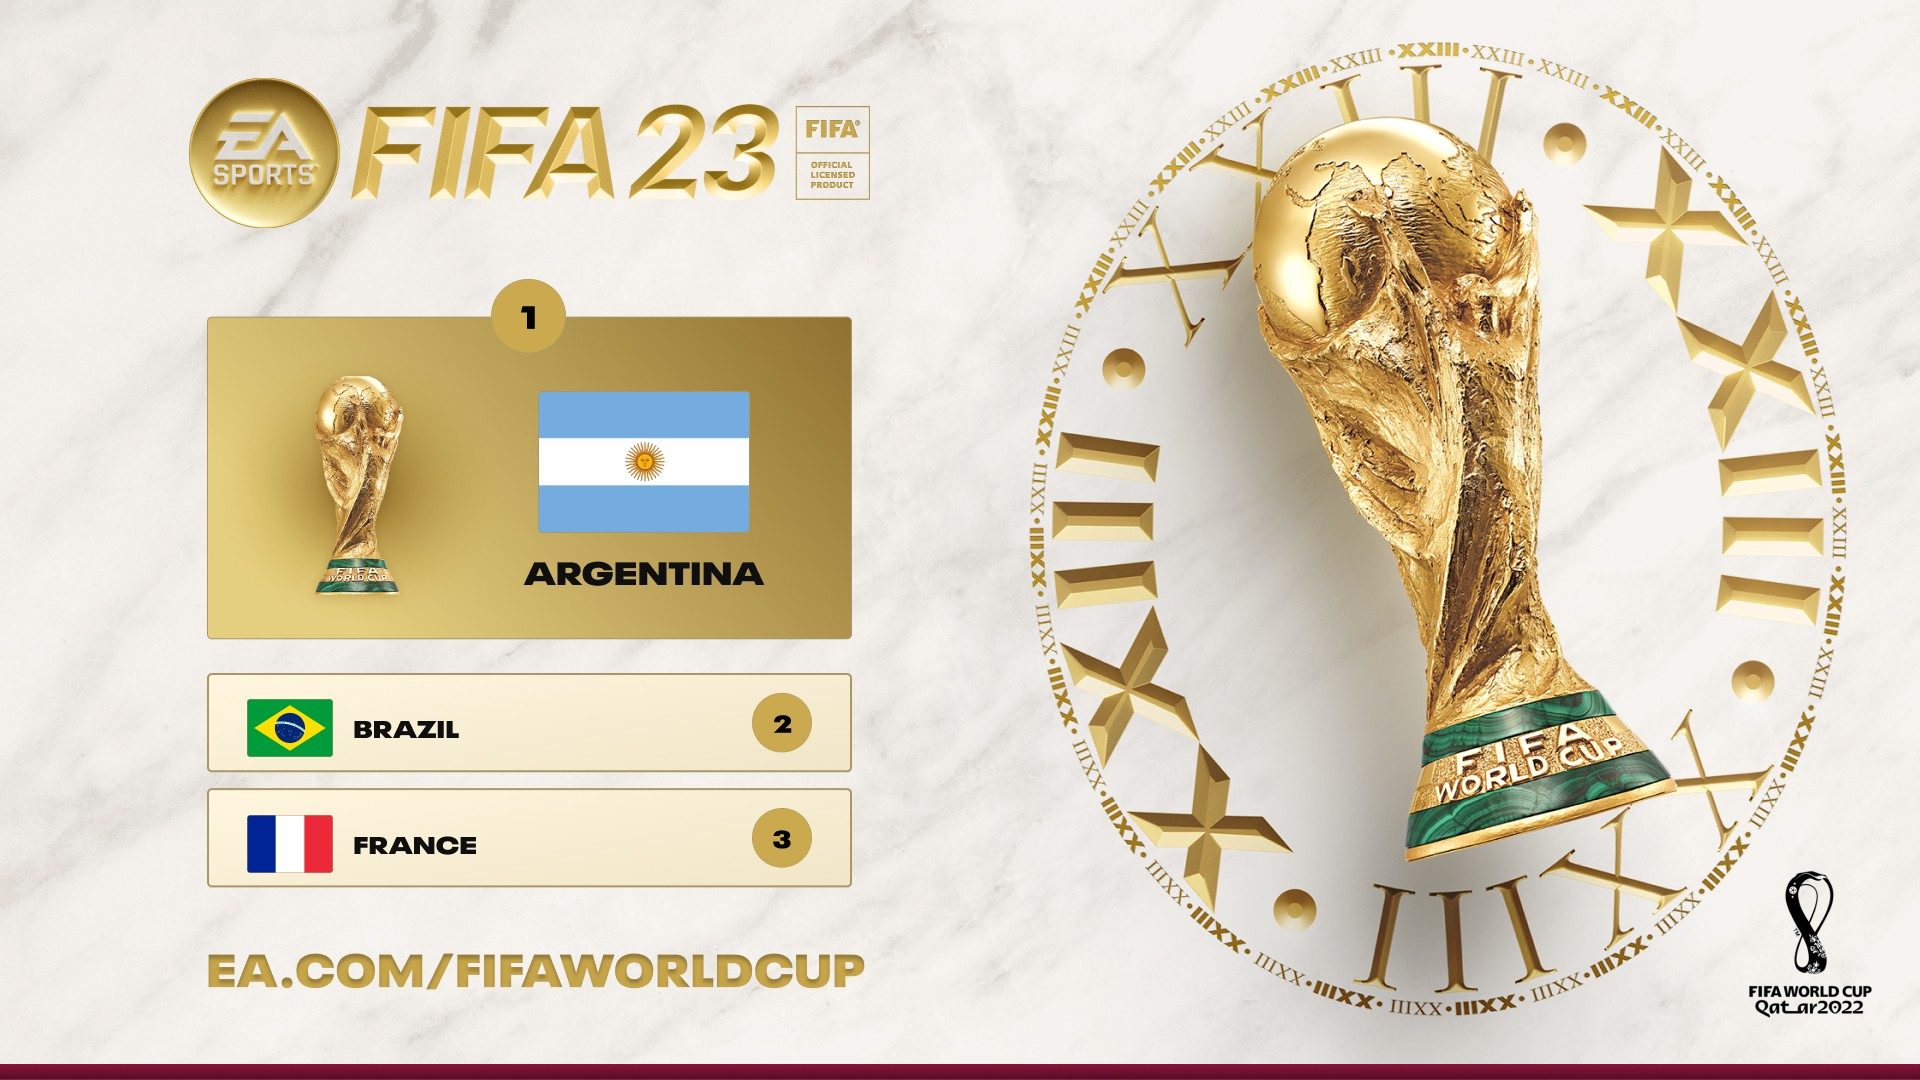 L'Argentina sarà il nuovo campione della Coppa del Mondo FIFA, secondo il simulatore FIFA 23